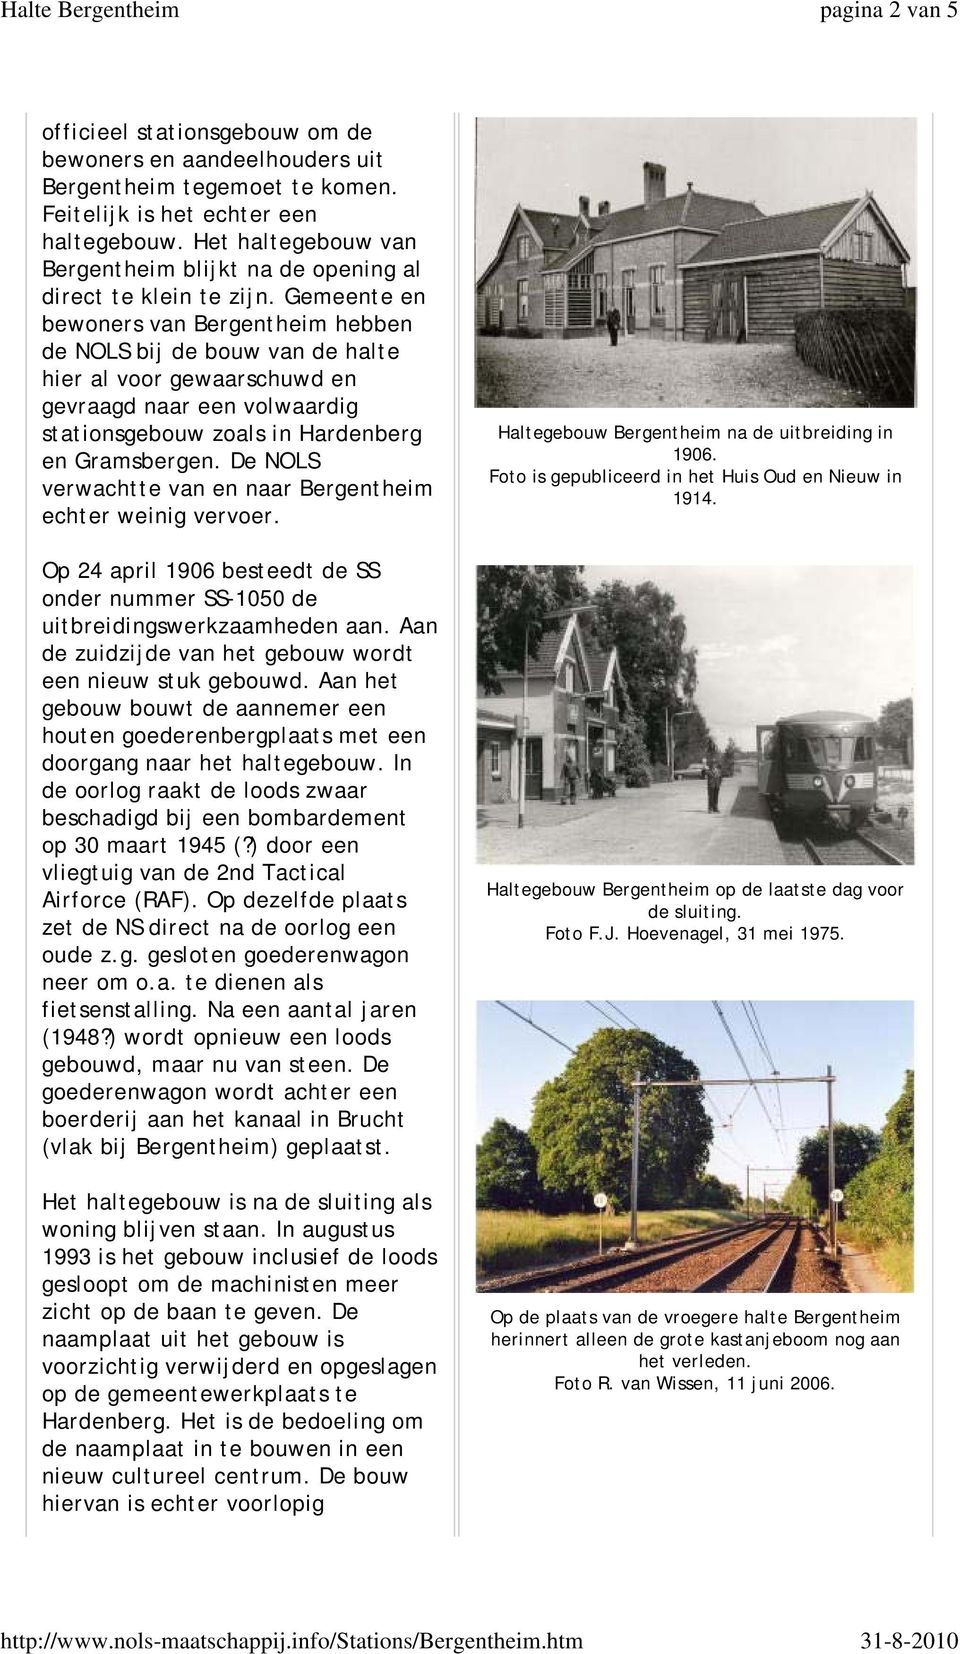 Gemeente en bewoners van Bergentheim hebben de NOLS bij de bouw van de halte hier al voor gewaarschuwd en gevraagd naar een volwaardig stationsgebouw zoals in Hardenberg en Gramsbergen.